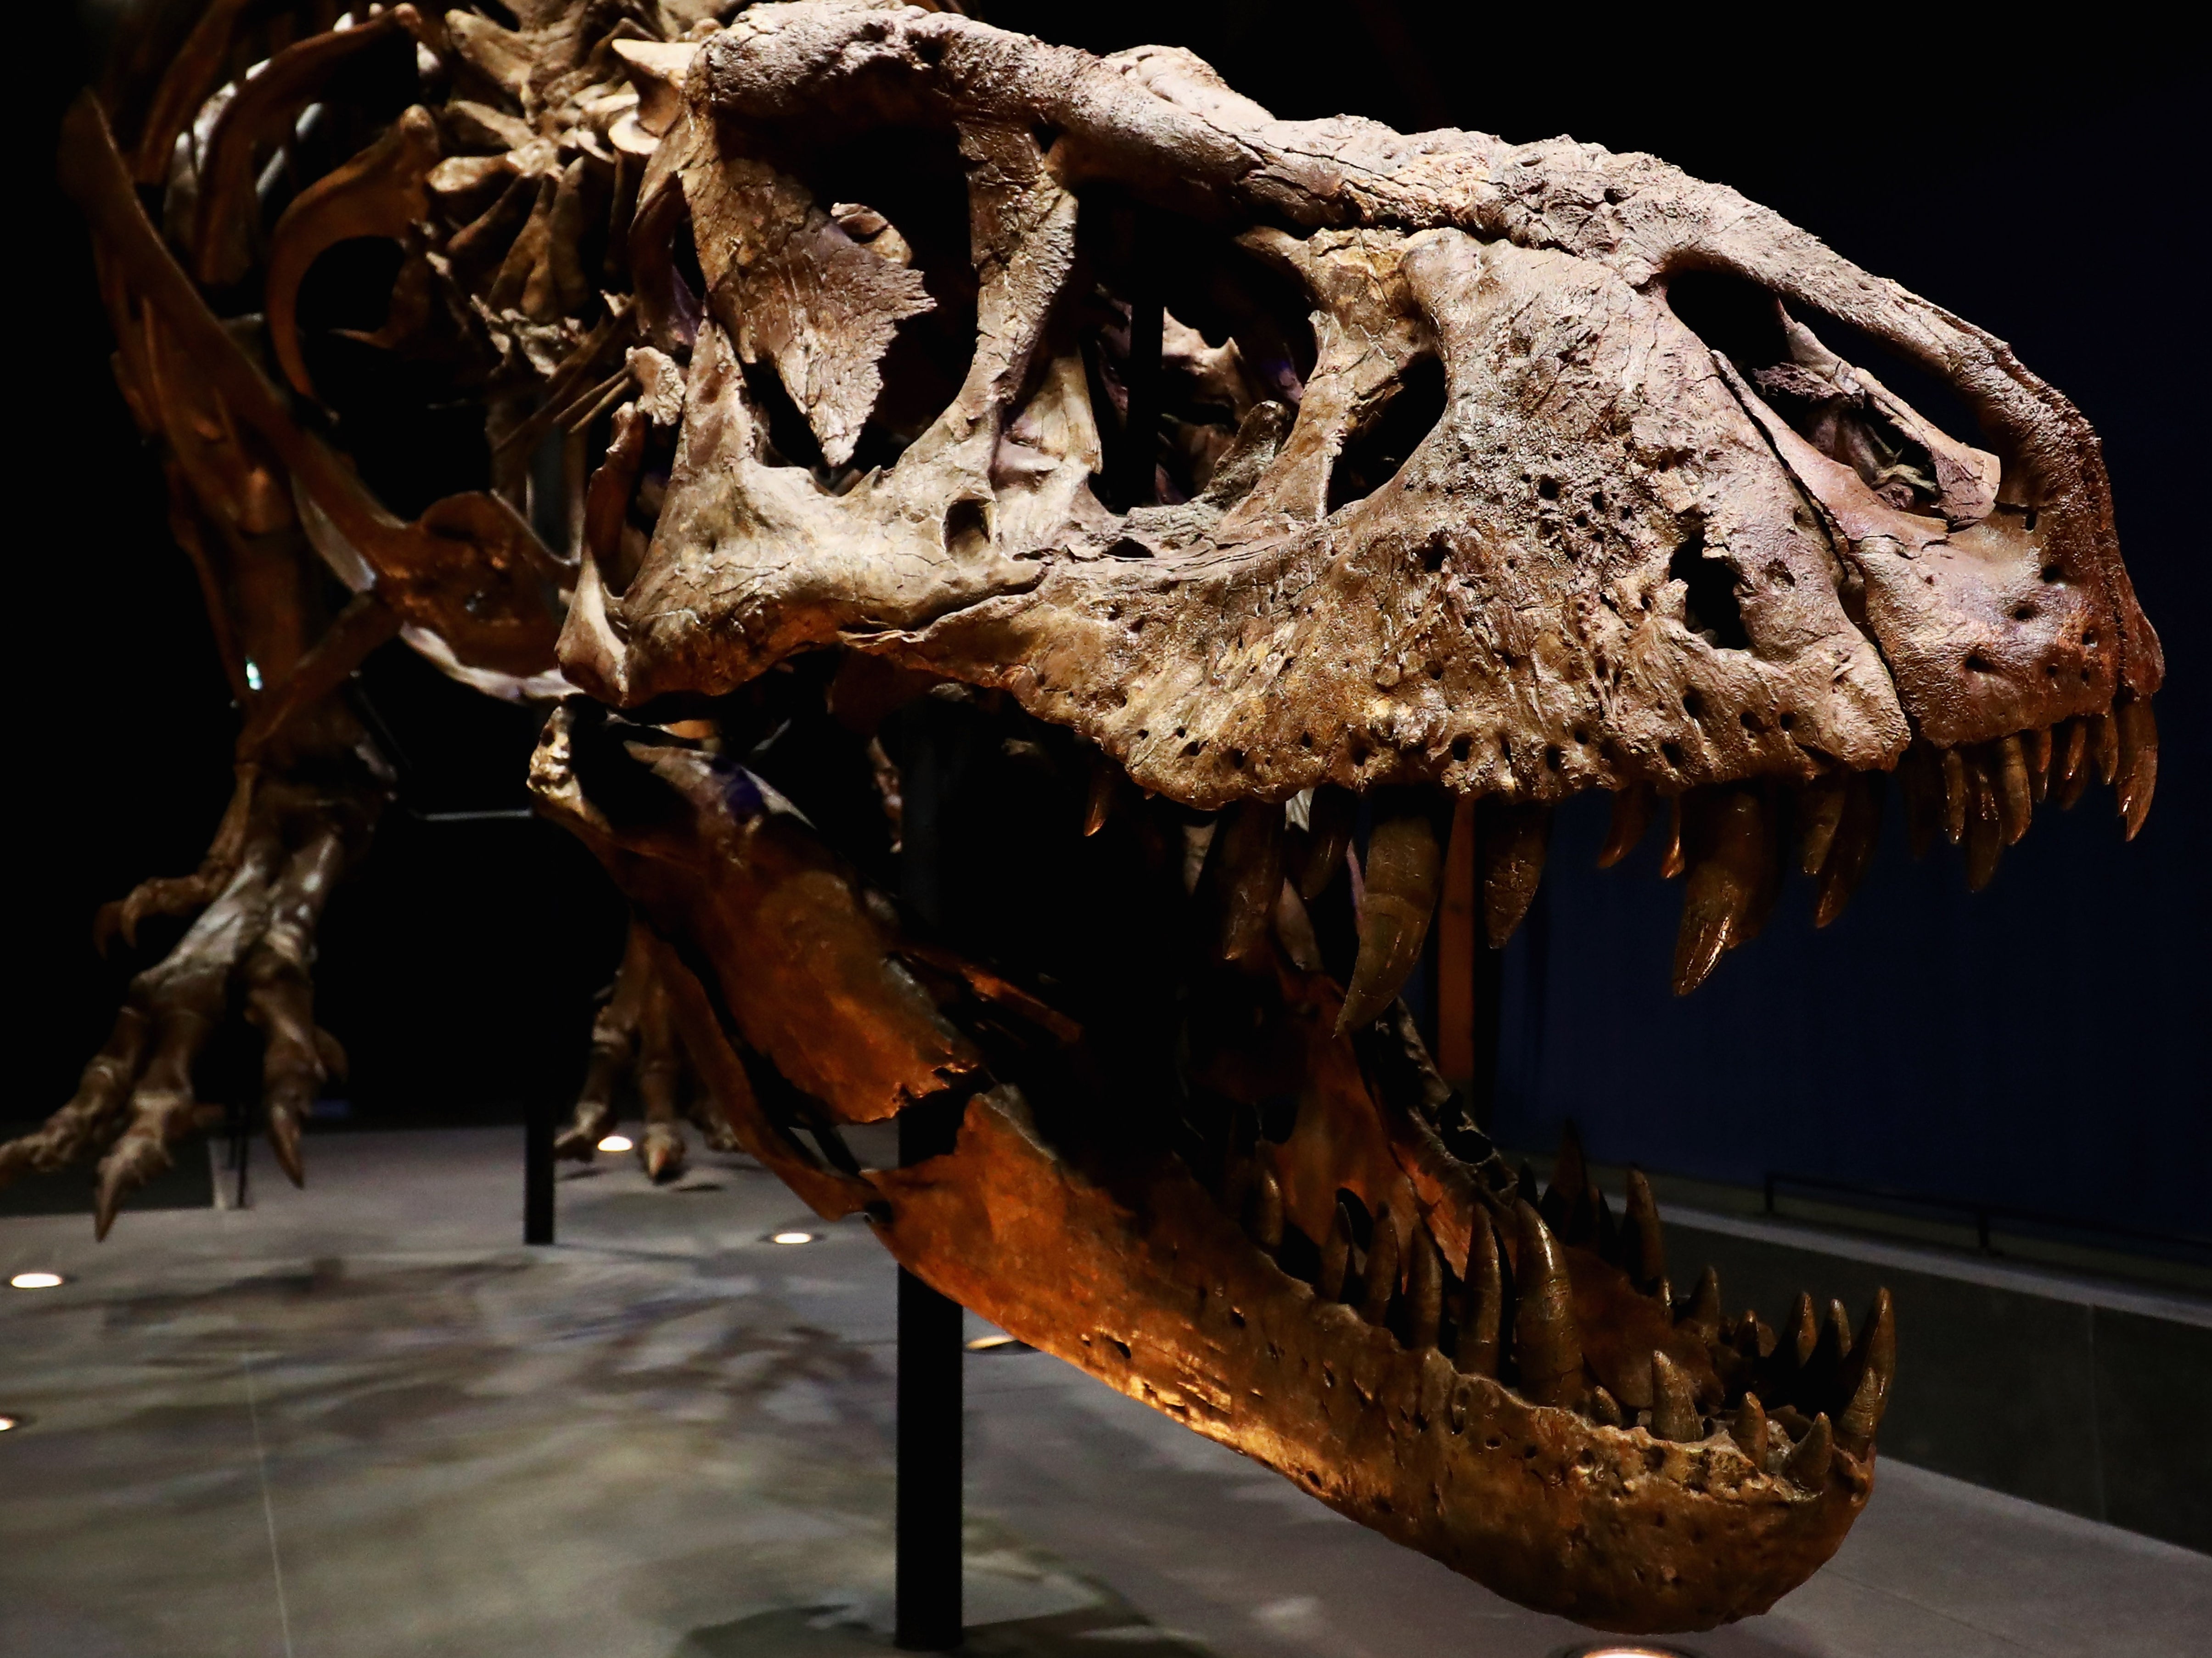 El esqueleto de un tiranosaurio rex desenterrado en Montana en 2013 y expuesto en el Museo de Historia Natural de Leiden en los Países Bajos.